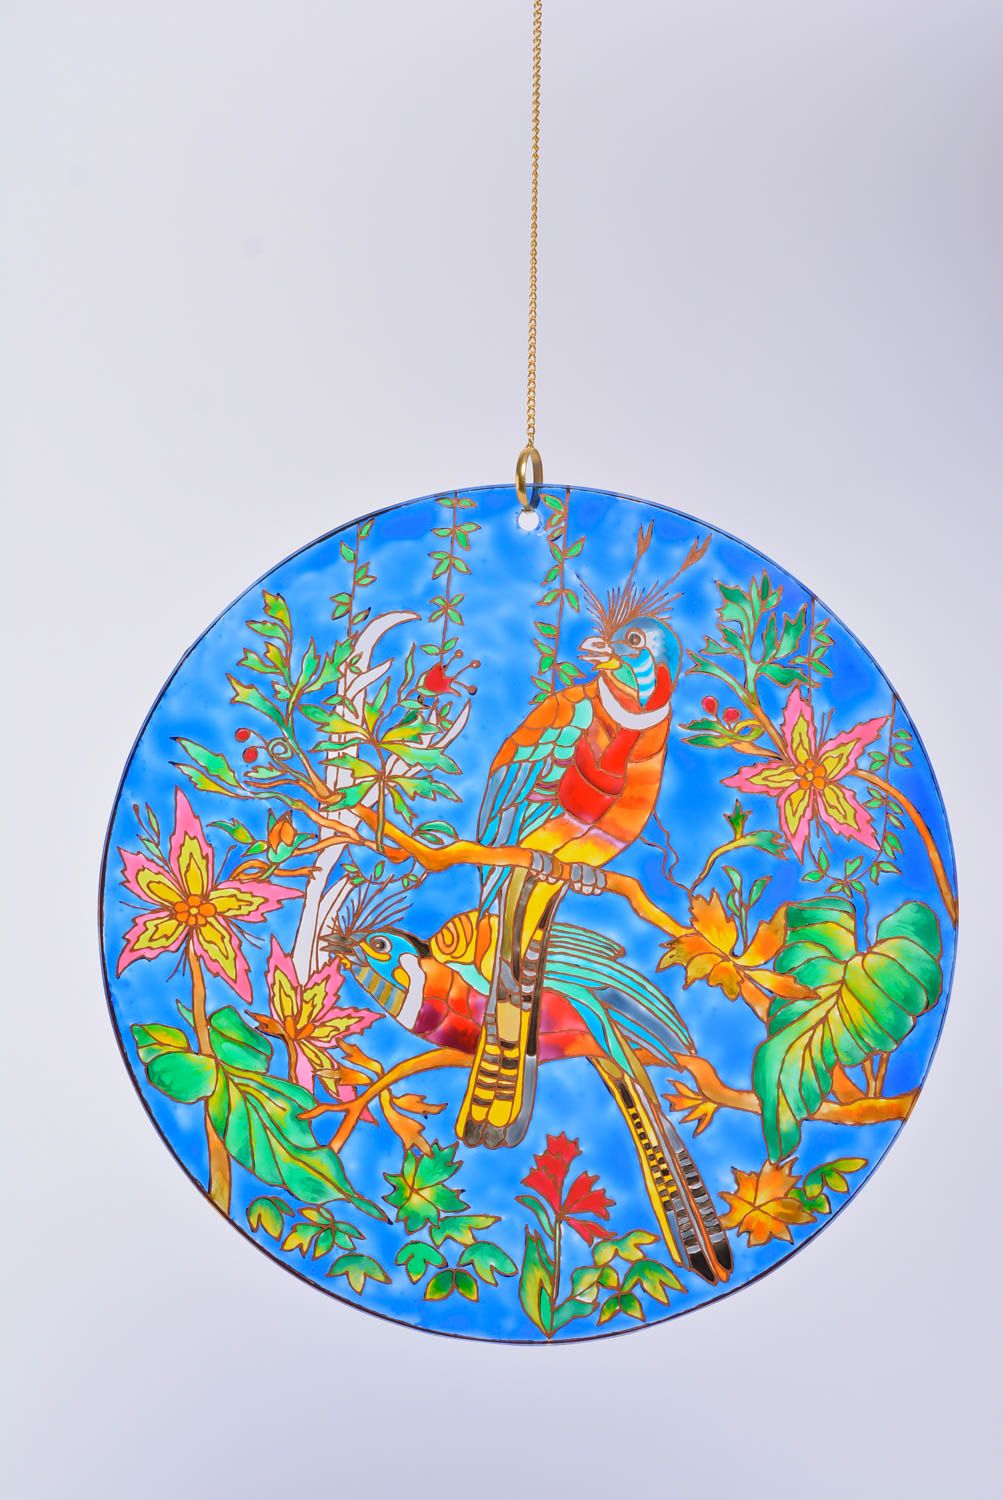 Декоративная тарелка из стекла расписанная витражными красками хэндмэйд Экзотика фото 3